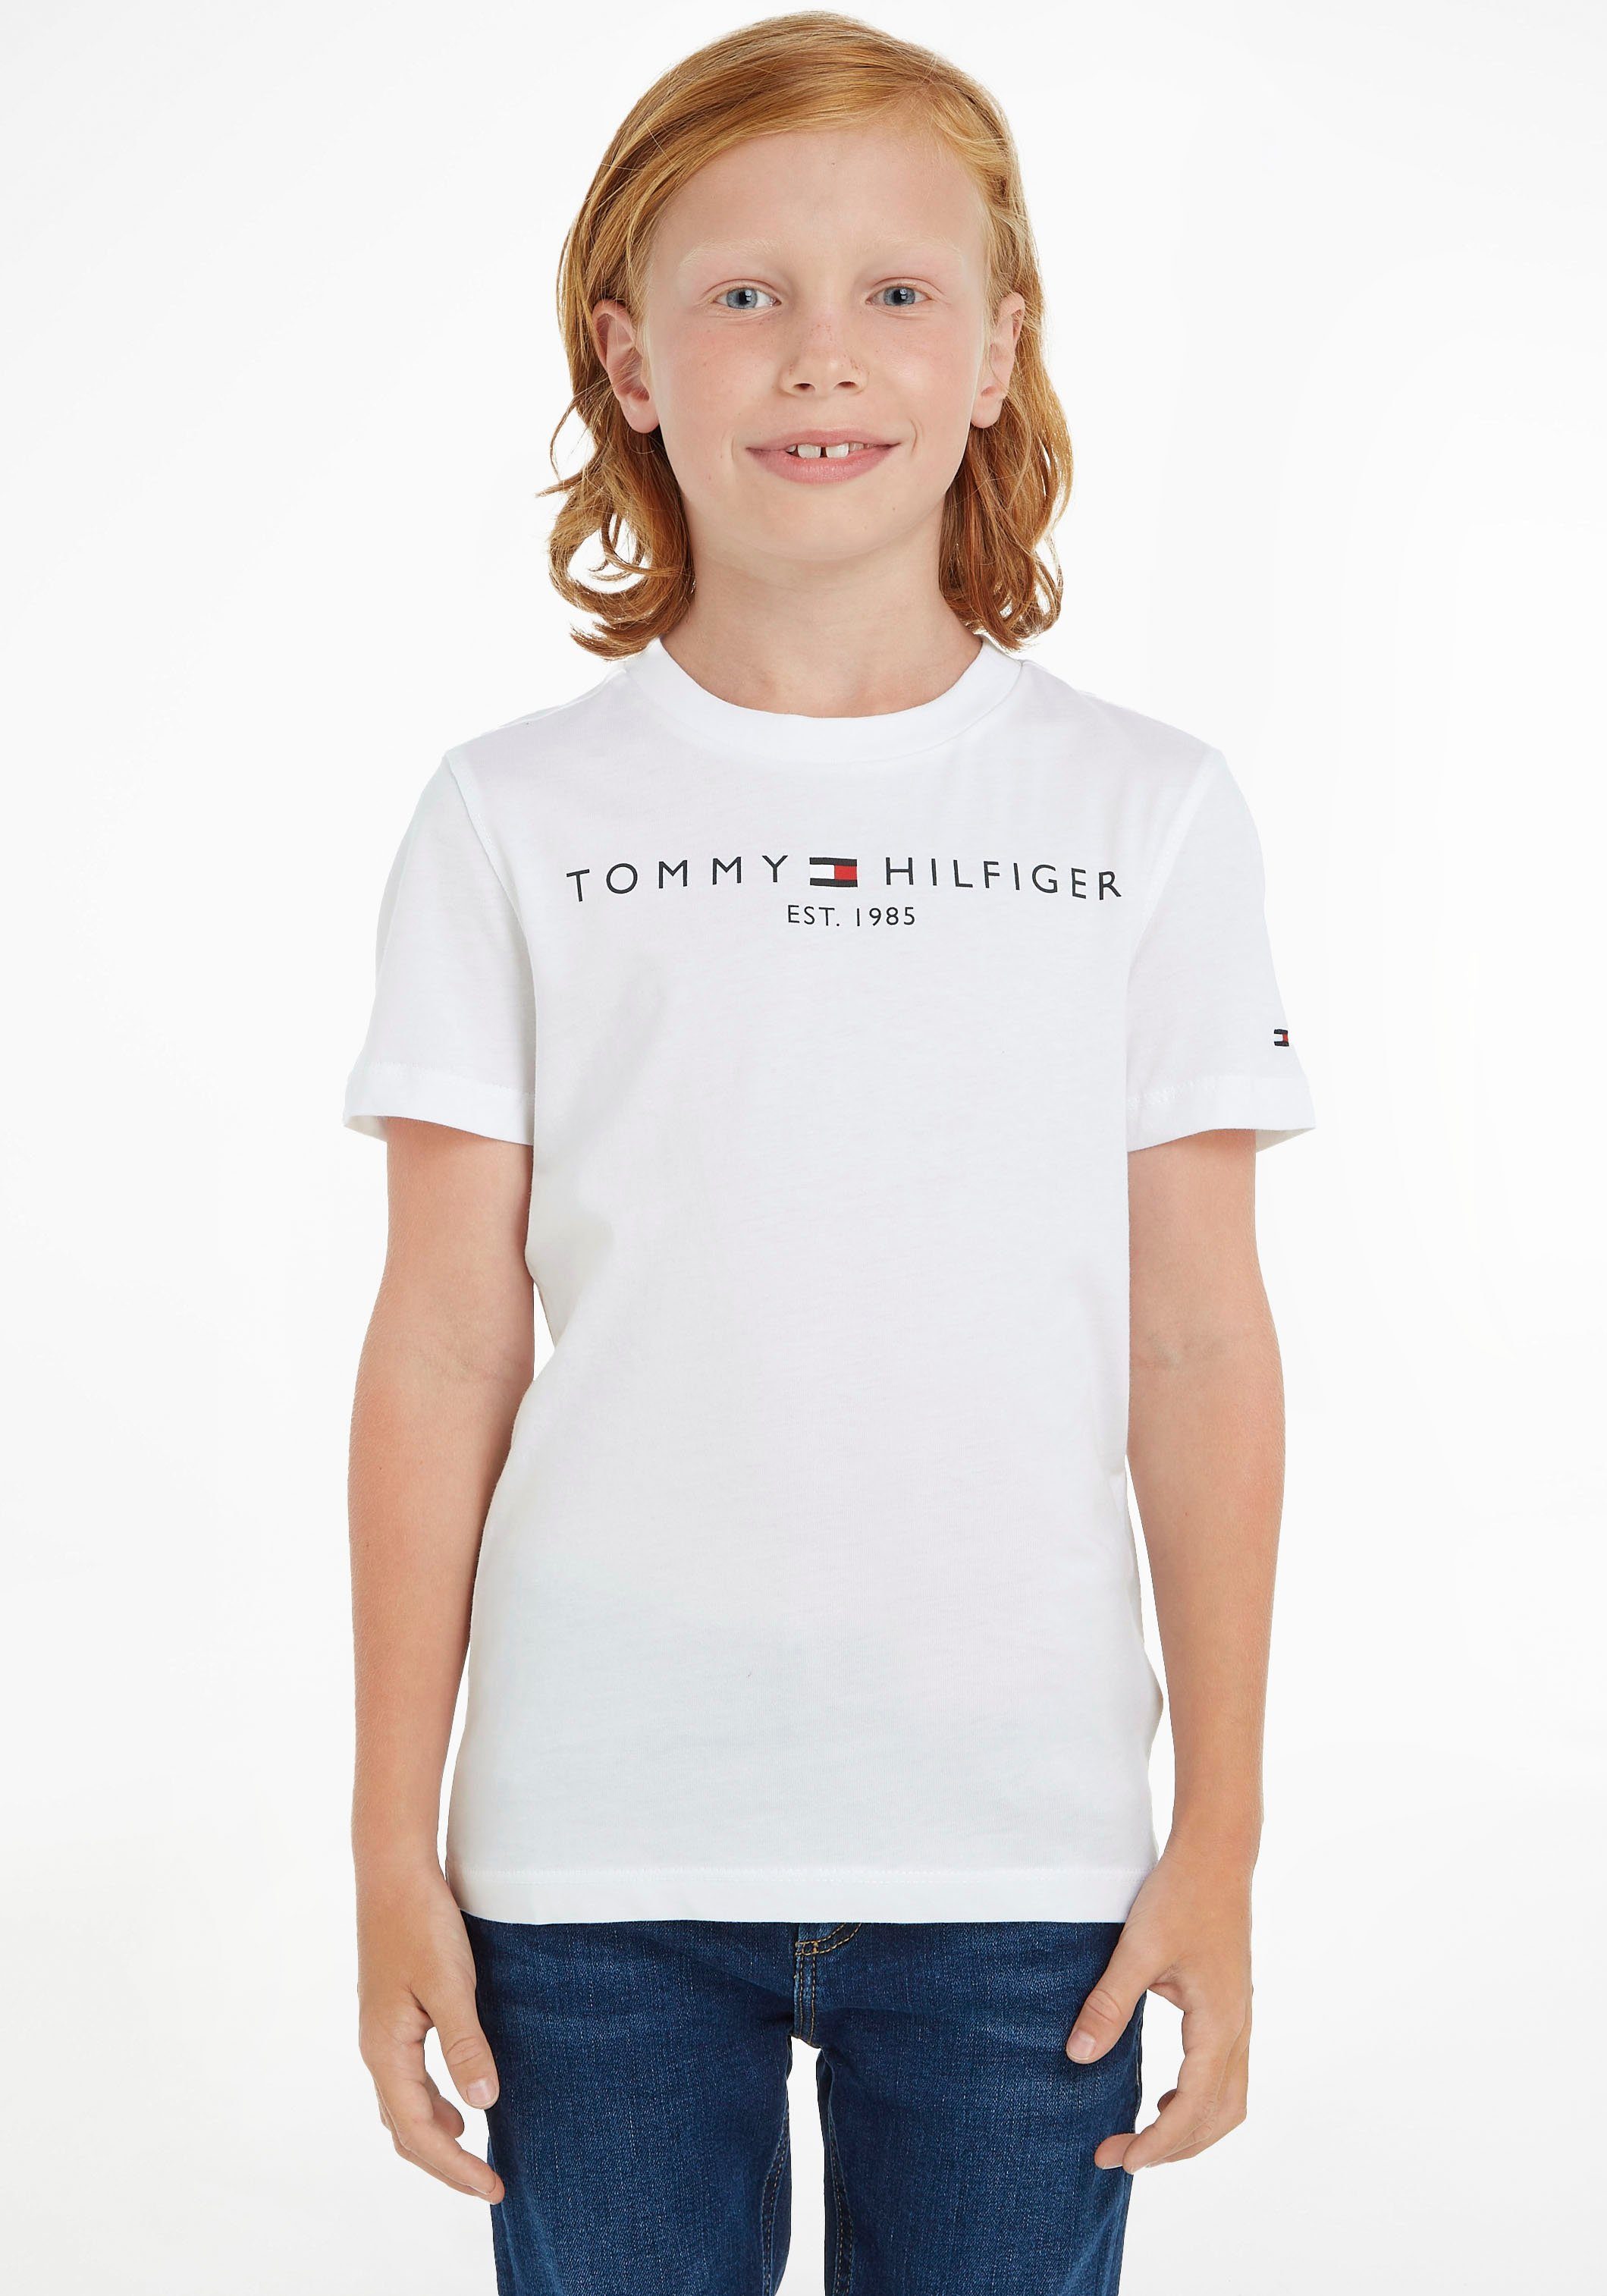 ESSENTIAL TEE und Mädchen Hilfiger Kids MiniMe,für Kinder Junior Tommy Jungen T-Shirt